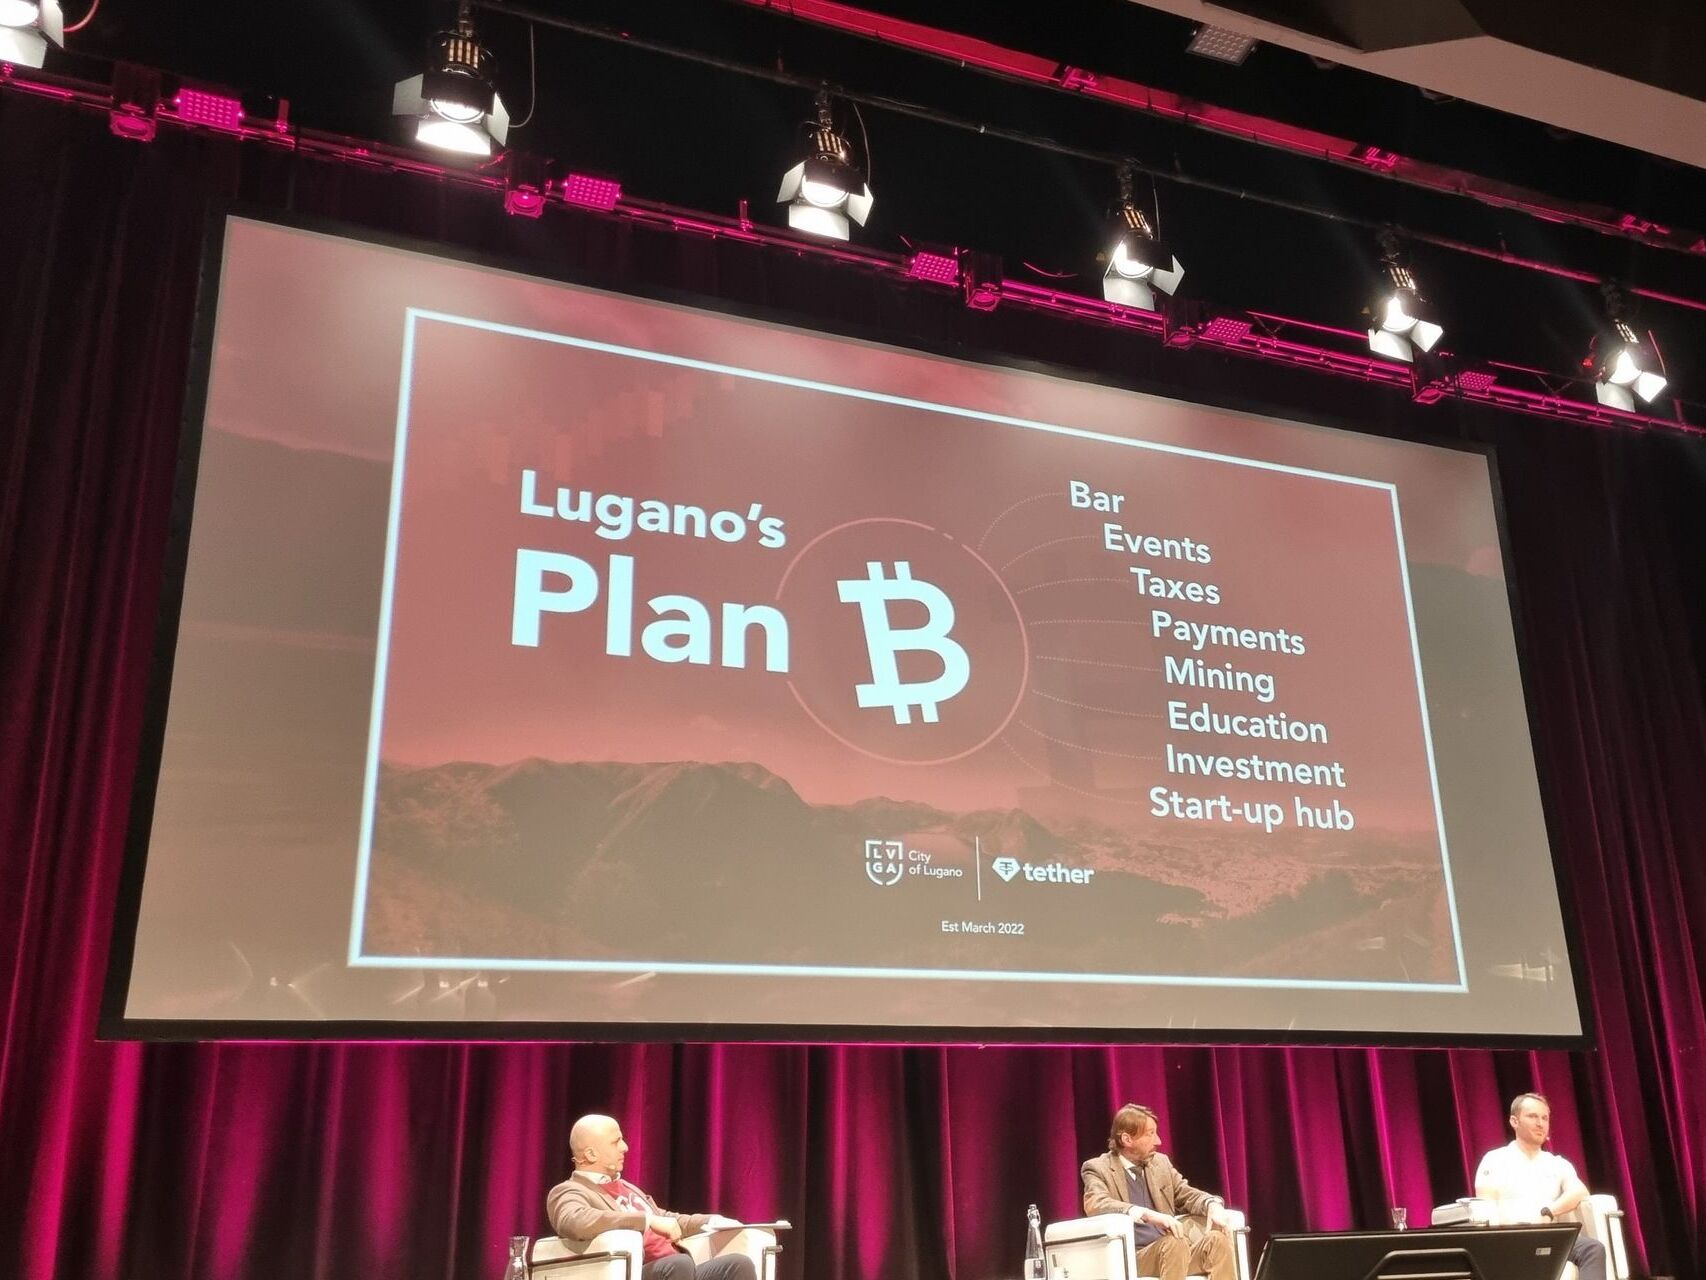 La presentazione, il 3 marzo 2022 al Centro Congressi, della collaborazione fra la Città di Lugano e Tether Operations Limited: il “Plan B” intende dare vita a un centro d'eccellenza europeo per l’adozione di criptovalute e tecnologia Blockchain